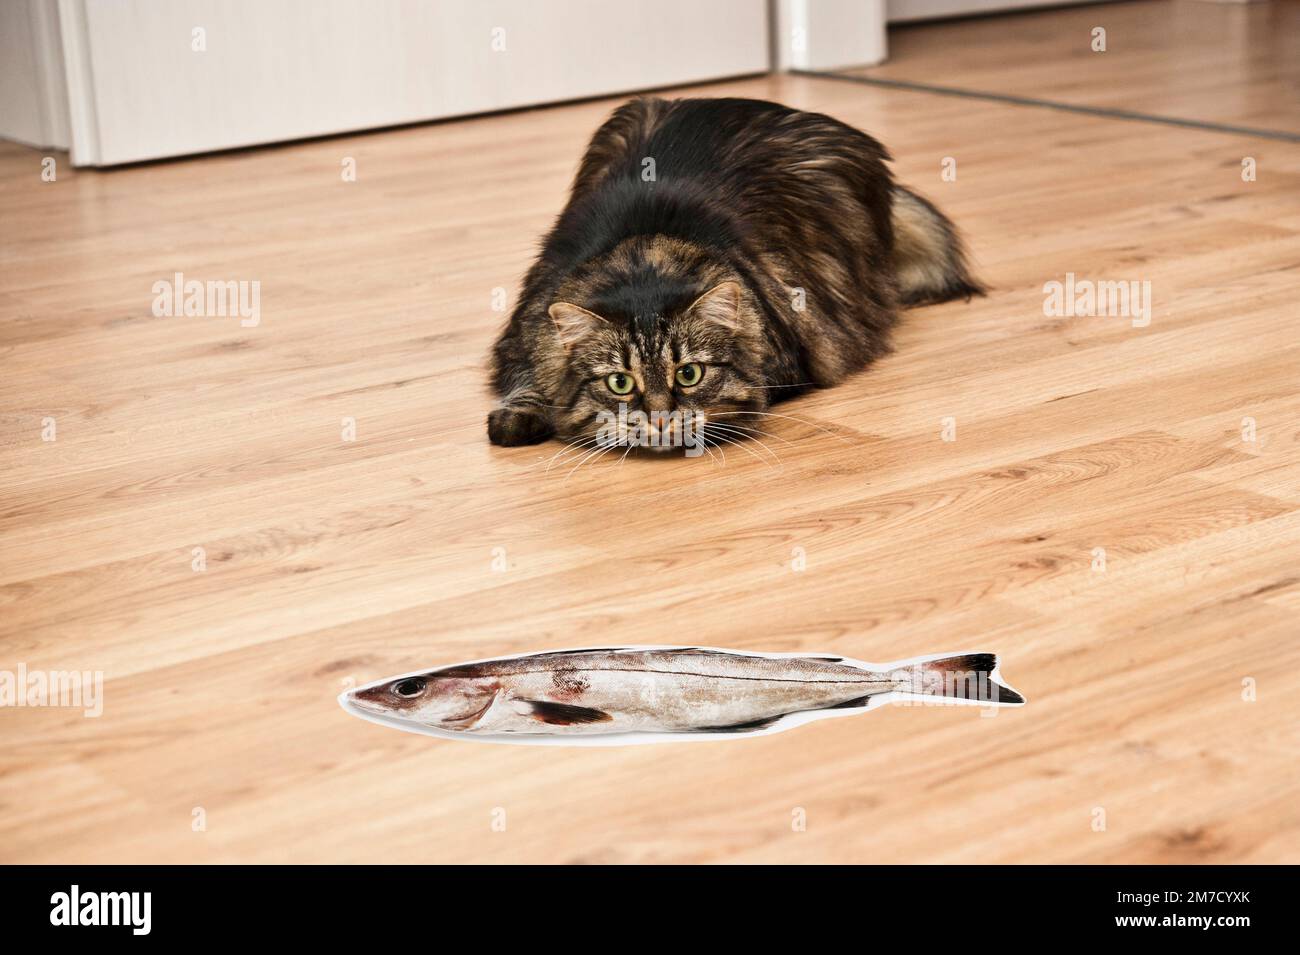 immagine umoristica di un gatto domestico osservando con intento un falso pesce di cartone Foto Stock